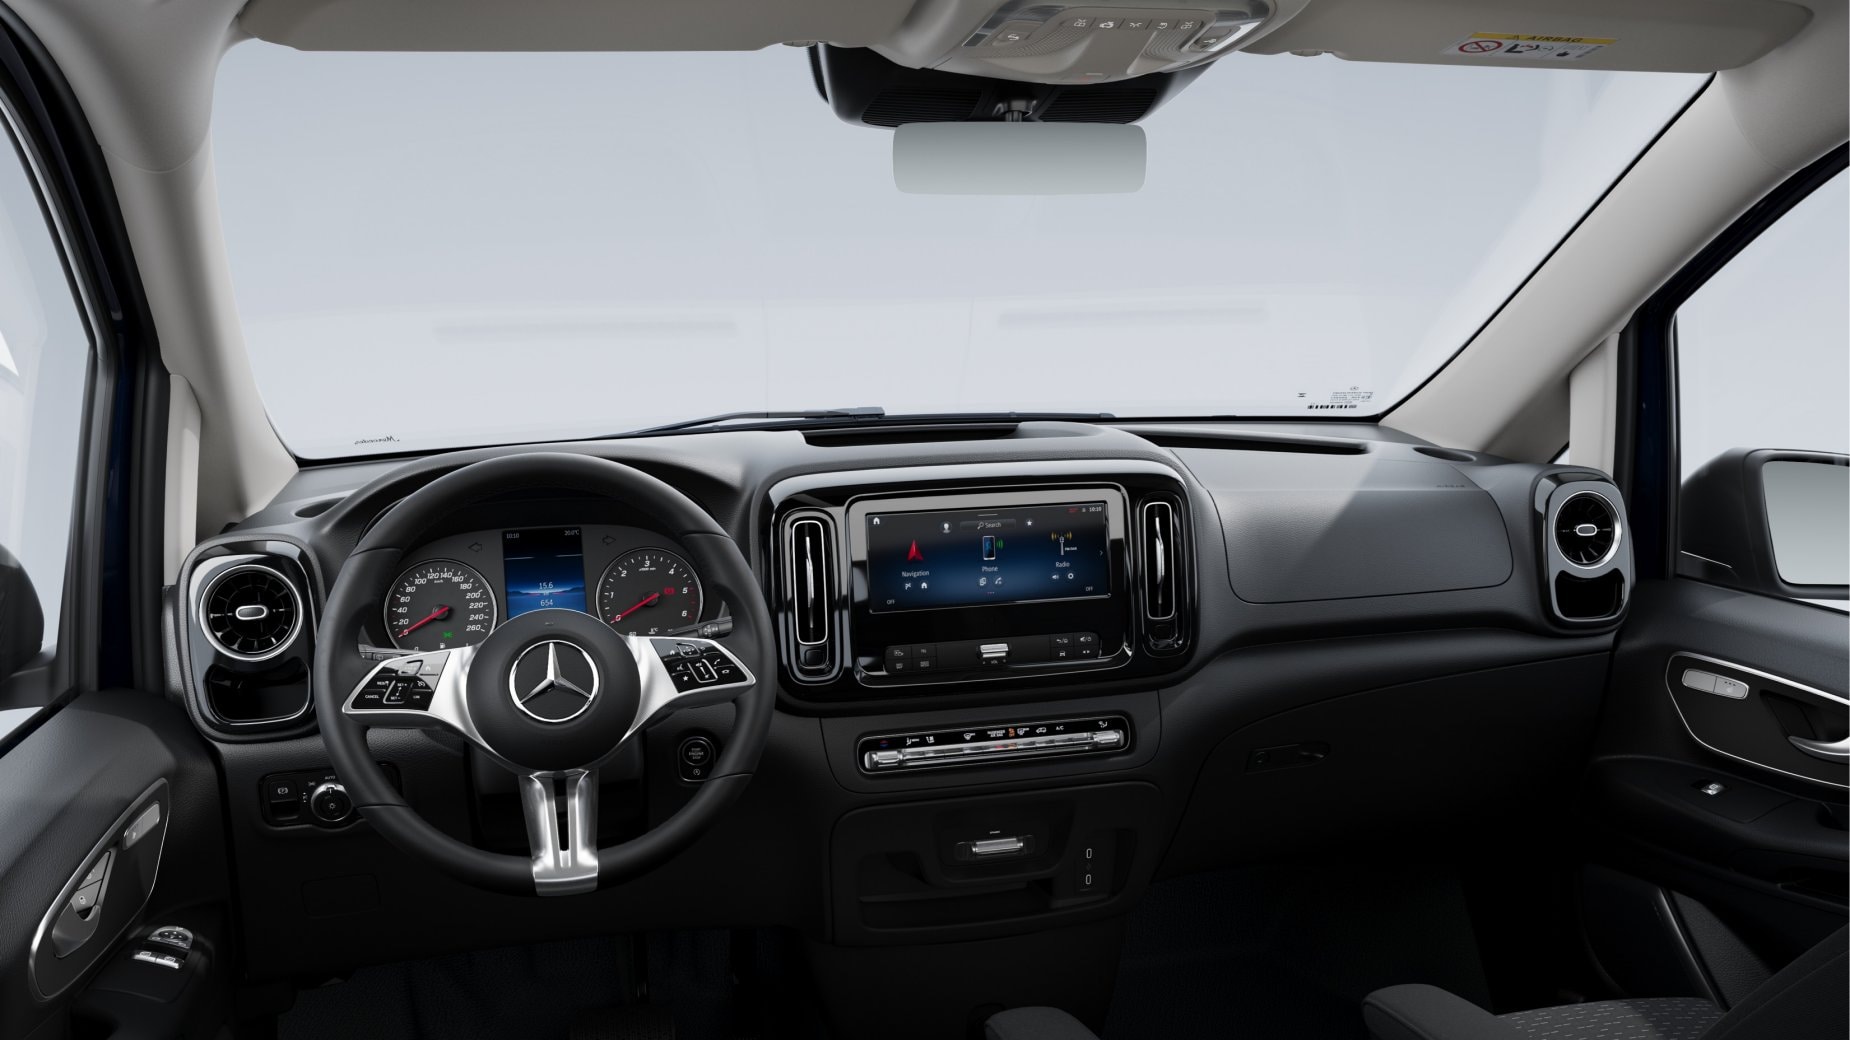 Mercedes-Benz Vito (W447) Panel Van L1 2018 Blueprint Template